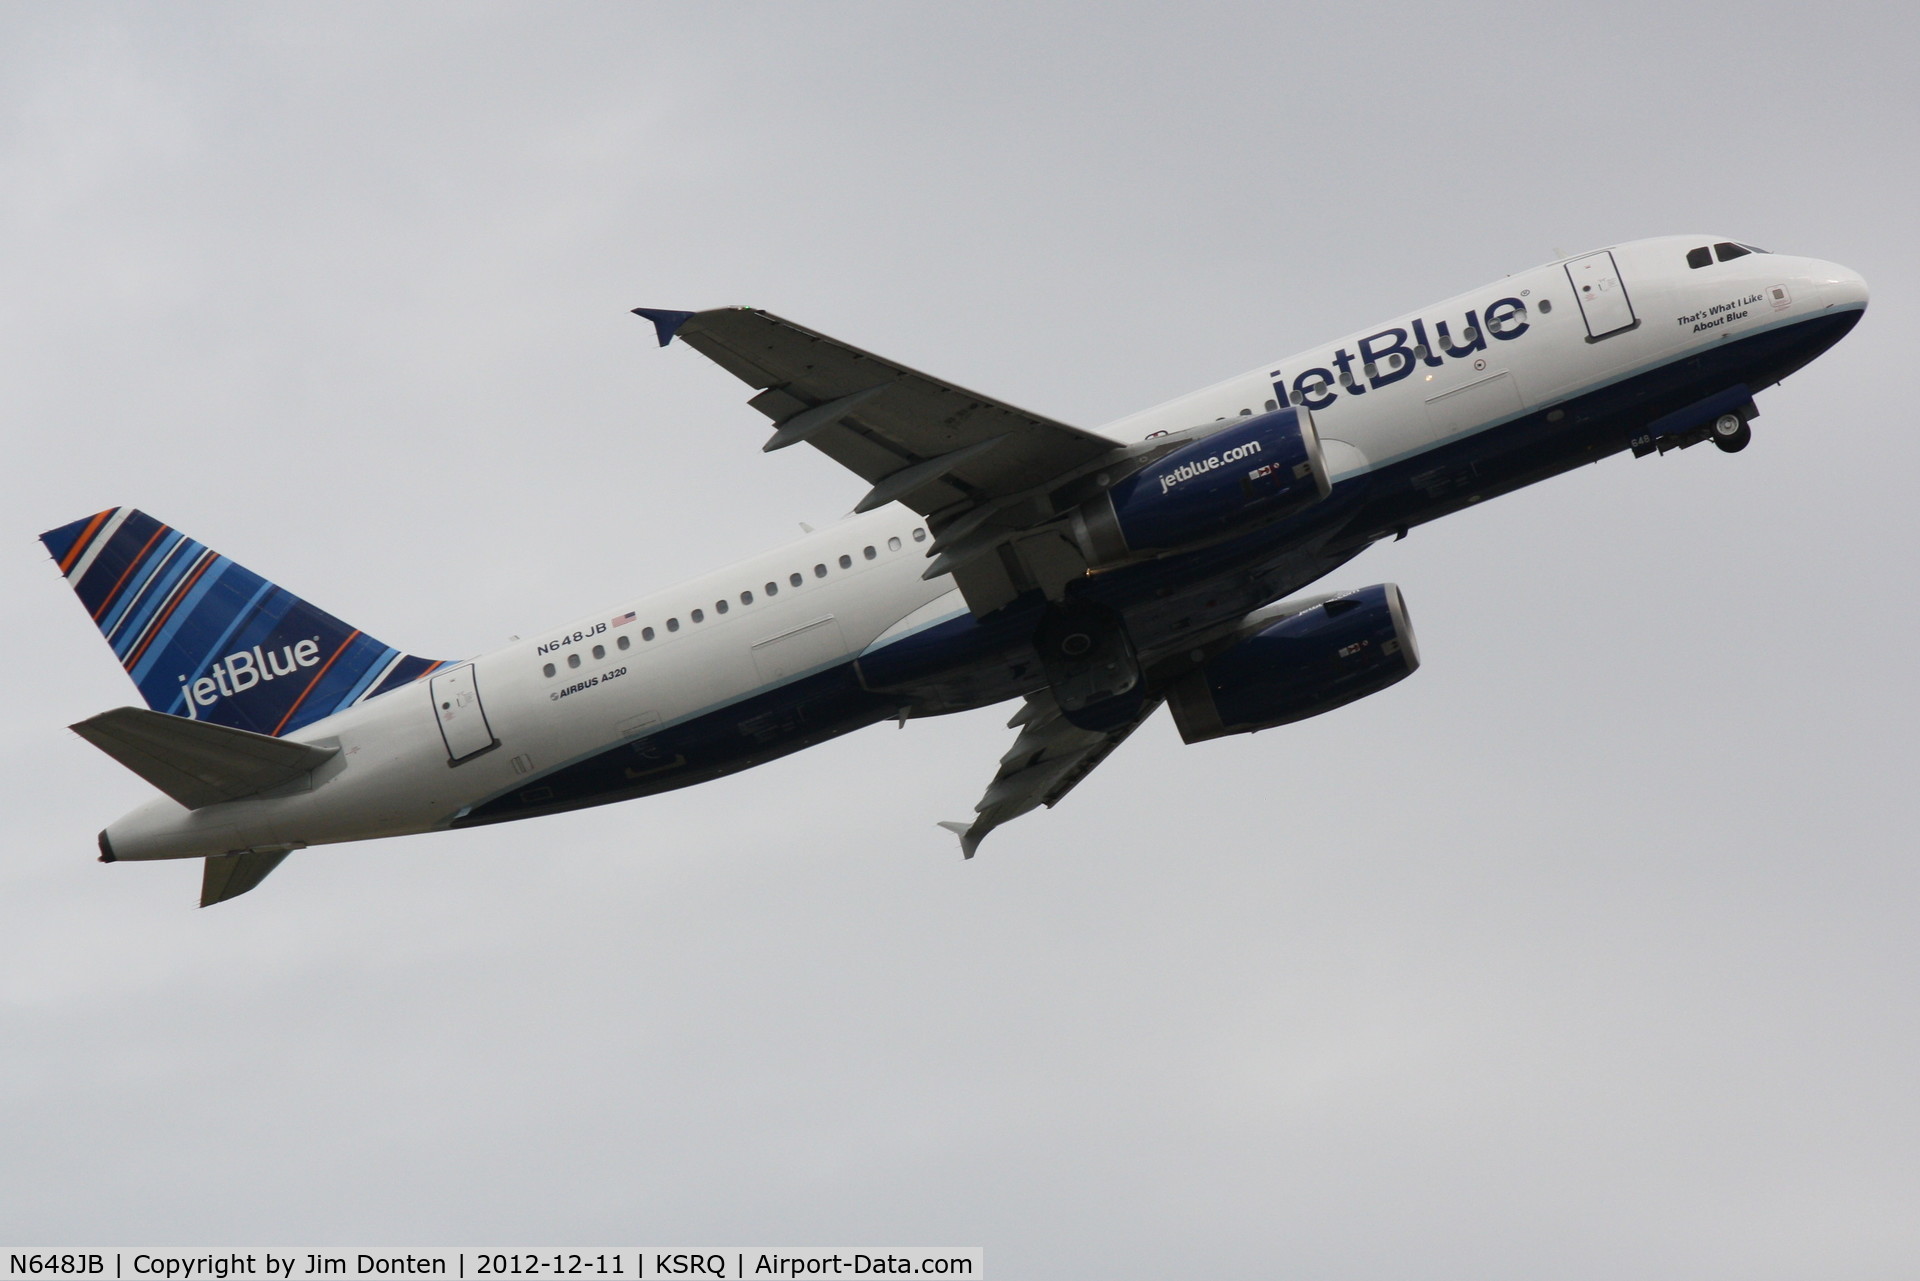 N648JB, 2006 Airbus A320-232 C/N 2970, JetBlue Flight 346 